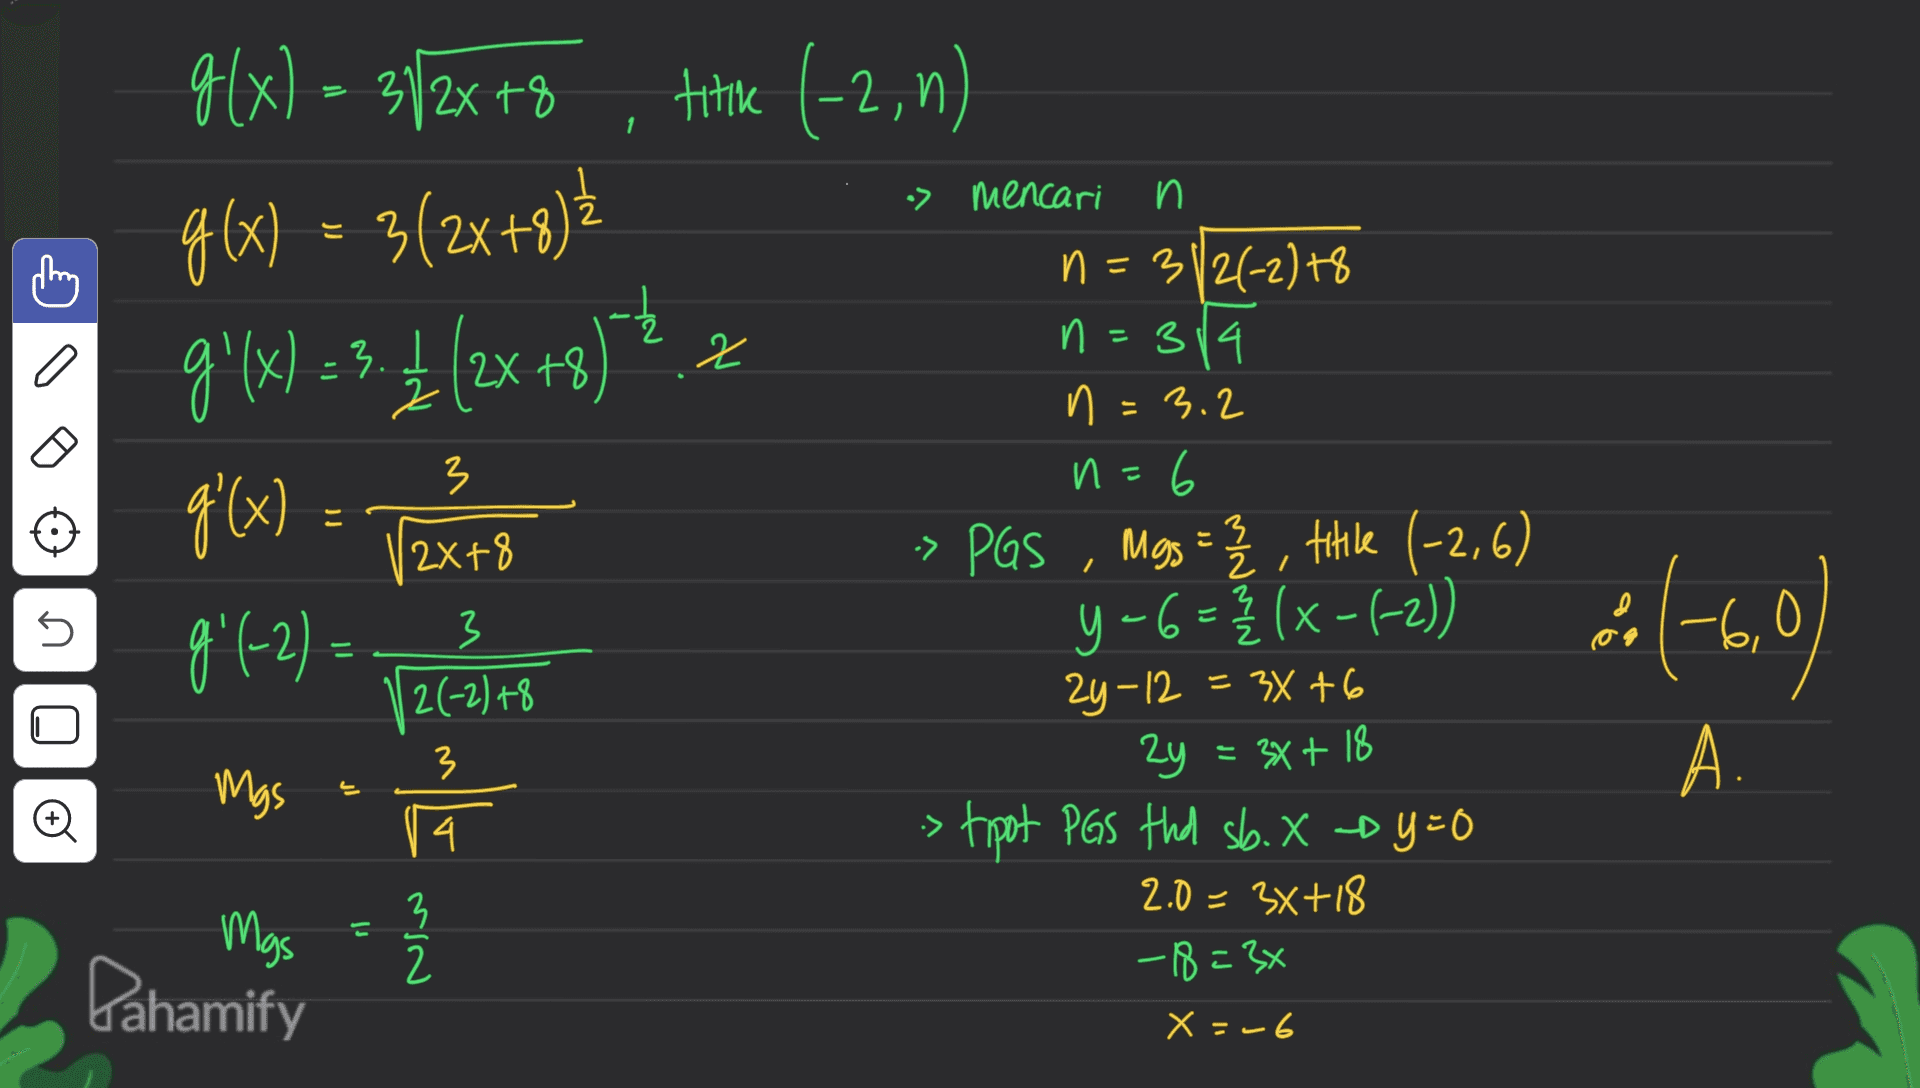 g(x) = 3/2x+8 titike (-2, 0) 1 > mencari n g(x) = 3(2x+8)? 9'(x) =3.4 (2x+8) - a 2 3 g'(x) = (2x+8 3 21 } 5 n=312(-2) +8 n=314 n = 3.2 n=6 И » PGS Mgs = 2 2 , titile (-2,6) 5-6 =} (x-(-2)) 24-12 = 34+6 2y = 3x + 18 > tipot PGS thd sb. X-by=0 2.0 = 3x+18 -18=3x y Ź 3 2(-2) +8 ) مه -6,1 9( 991-2) = 128 Mgs 류 Mas = 2 6,0 ) 3 A. 4. :> 3 2 Pahamify X = -6 